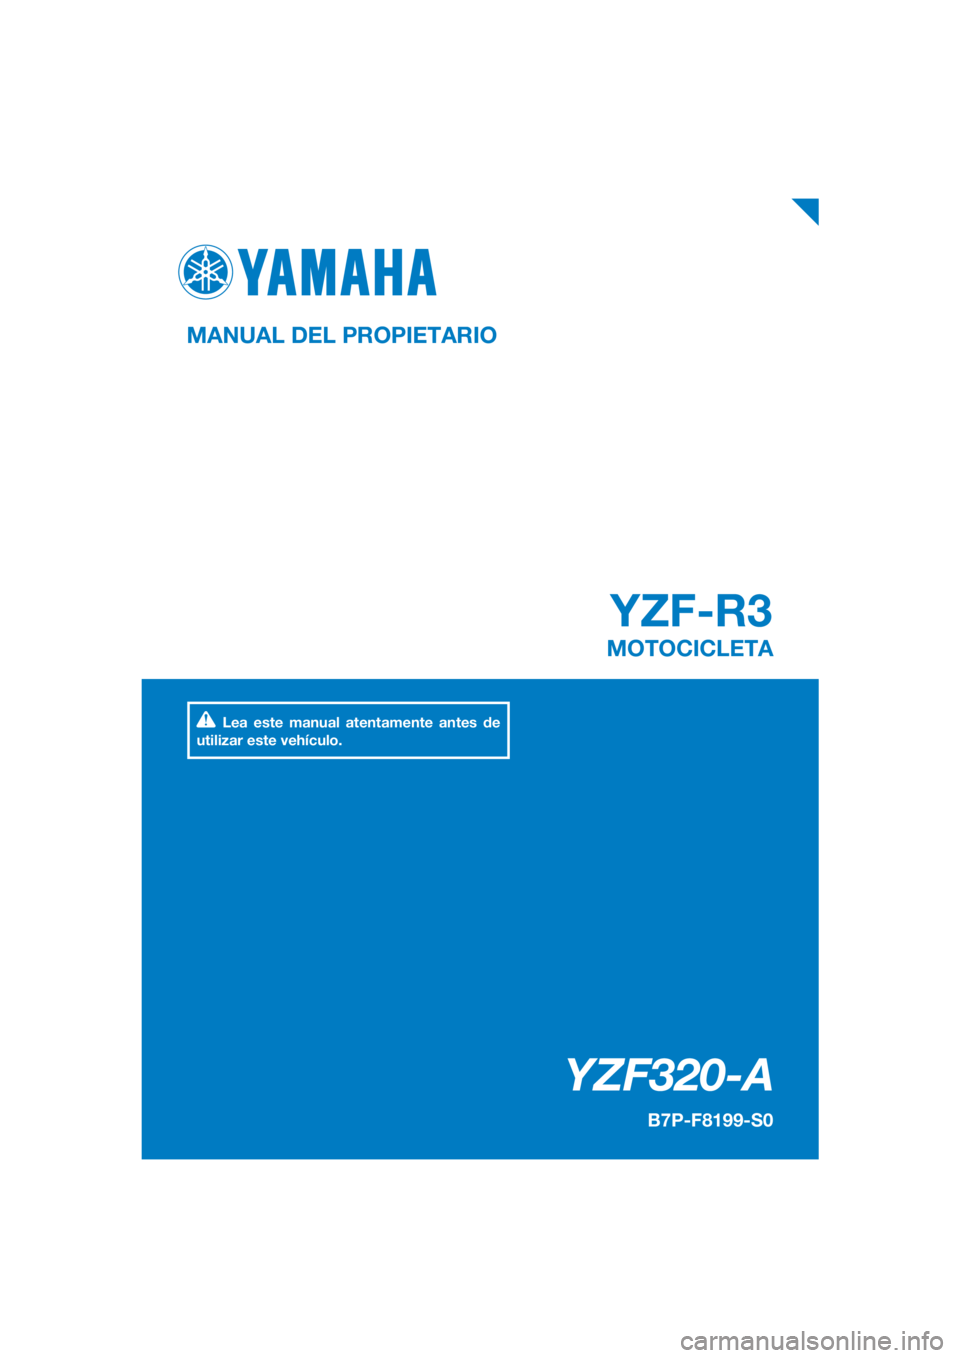 YAMAHA YZF-R3 2019  Manuale de Empleo (in Spanish) DIC183
YZF-R3
YZF320-A
MANUAL DEL PROPIETARIO
B7P-F8199-S0
MOTOCICLETA
Lea este manual atentamente antes de 
utilizar este vehículo.
[Spanish  (S)] 